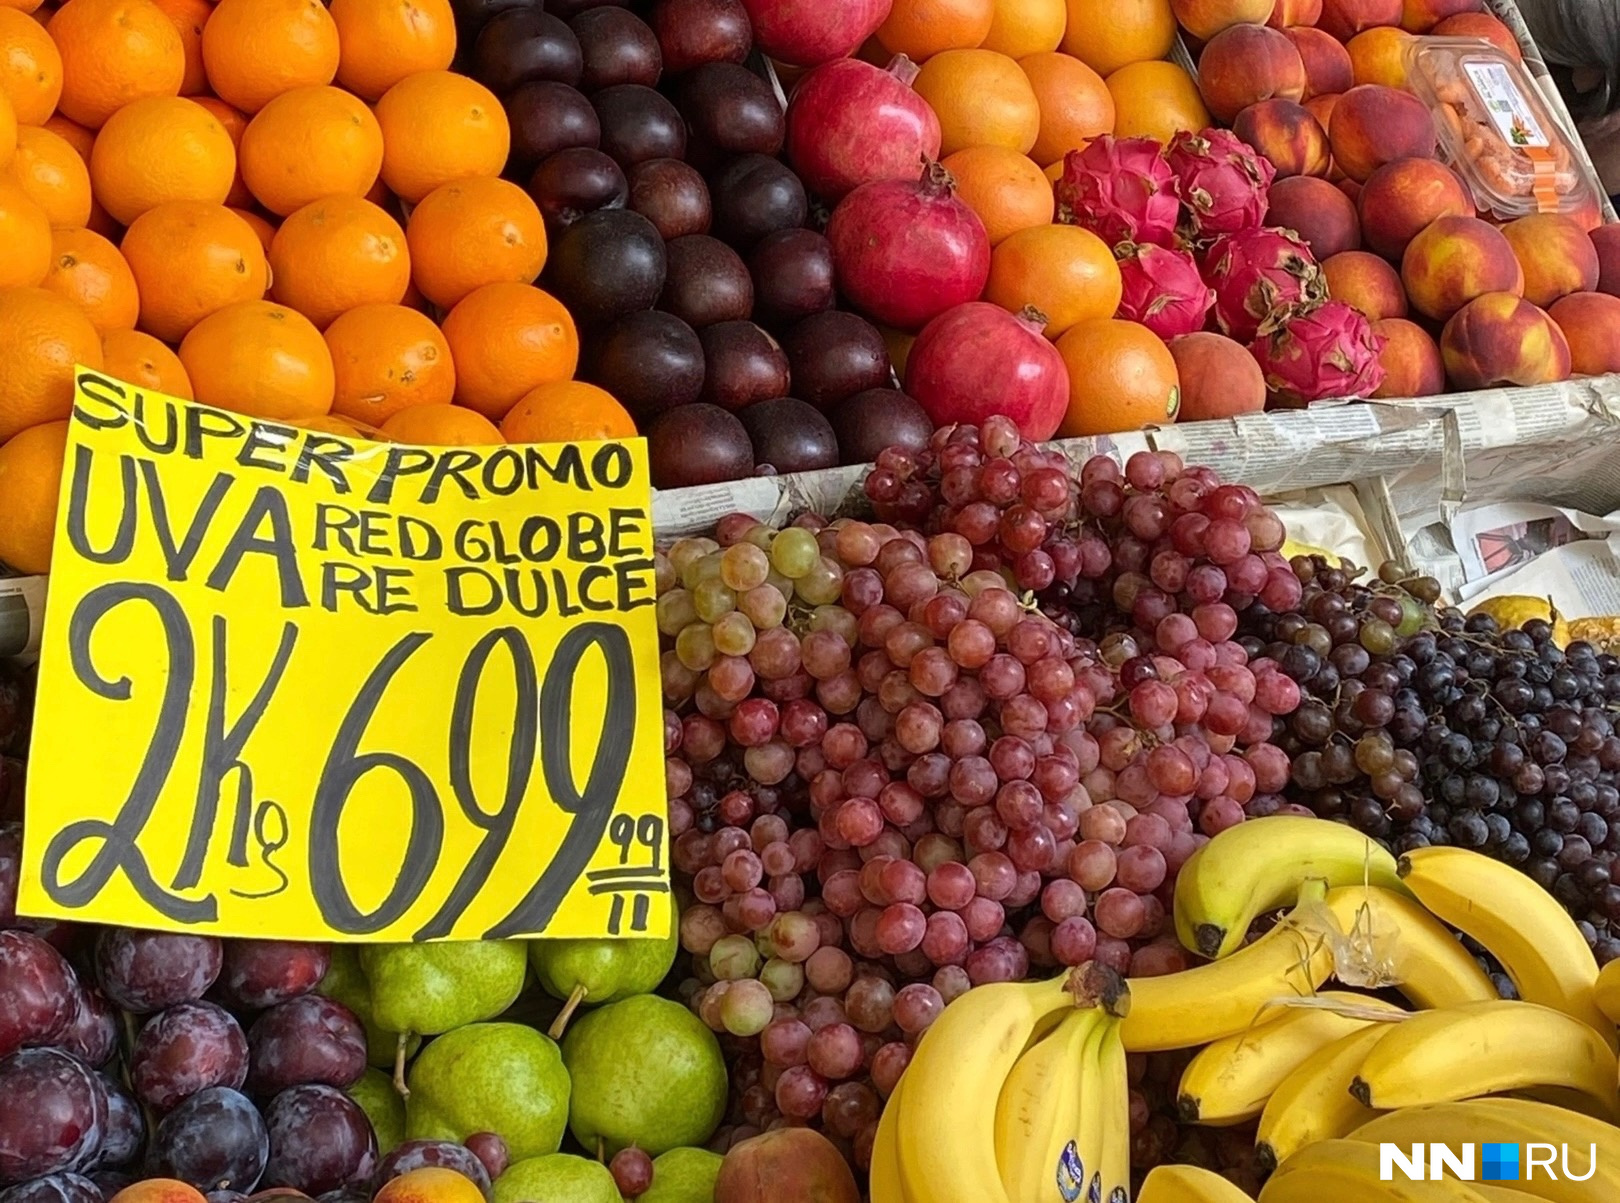 Цена на фрукты по сравнению с нашими — копеечная